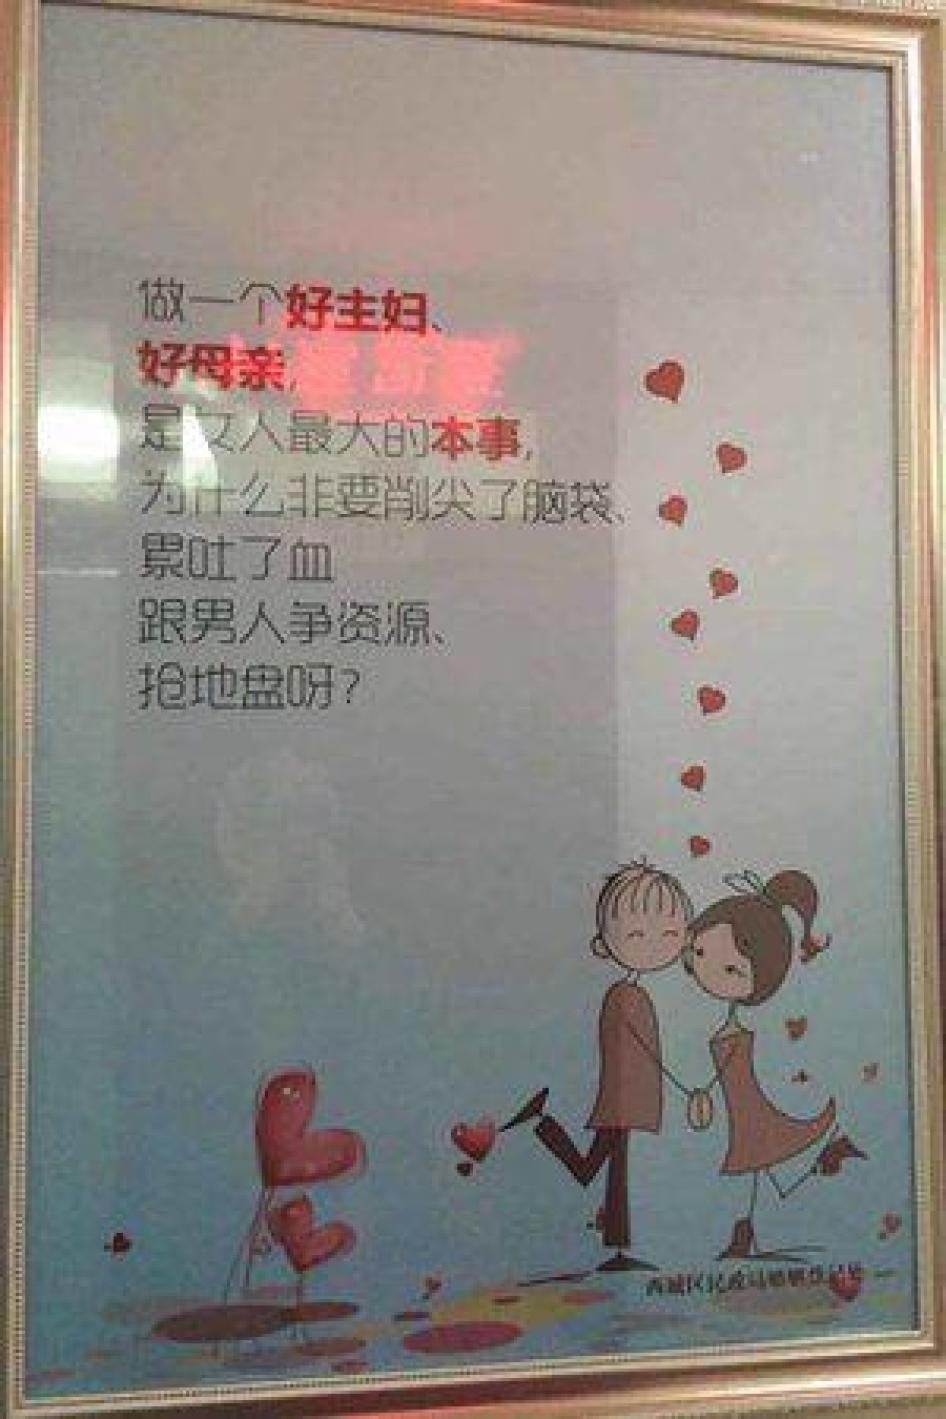 北京市某区婚姻登记处贴出海报，写著“做一个好主妇、好母亲，是女人最大的本事”。